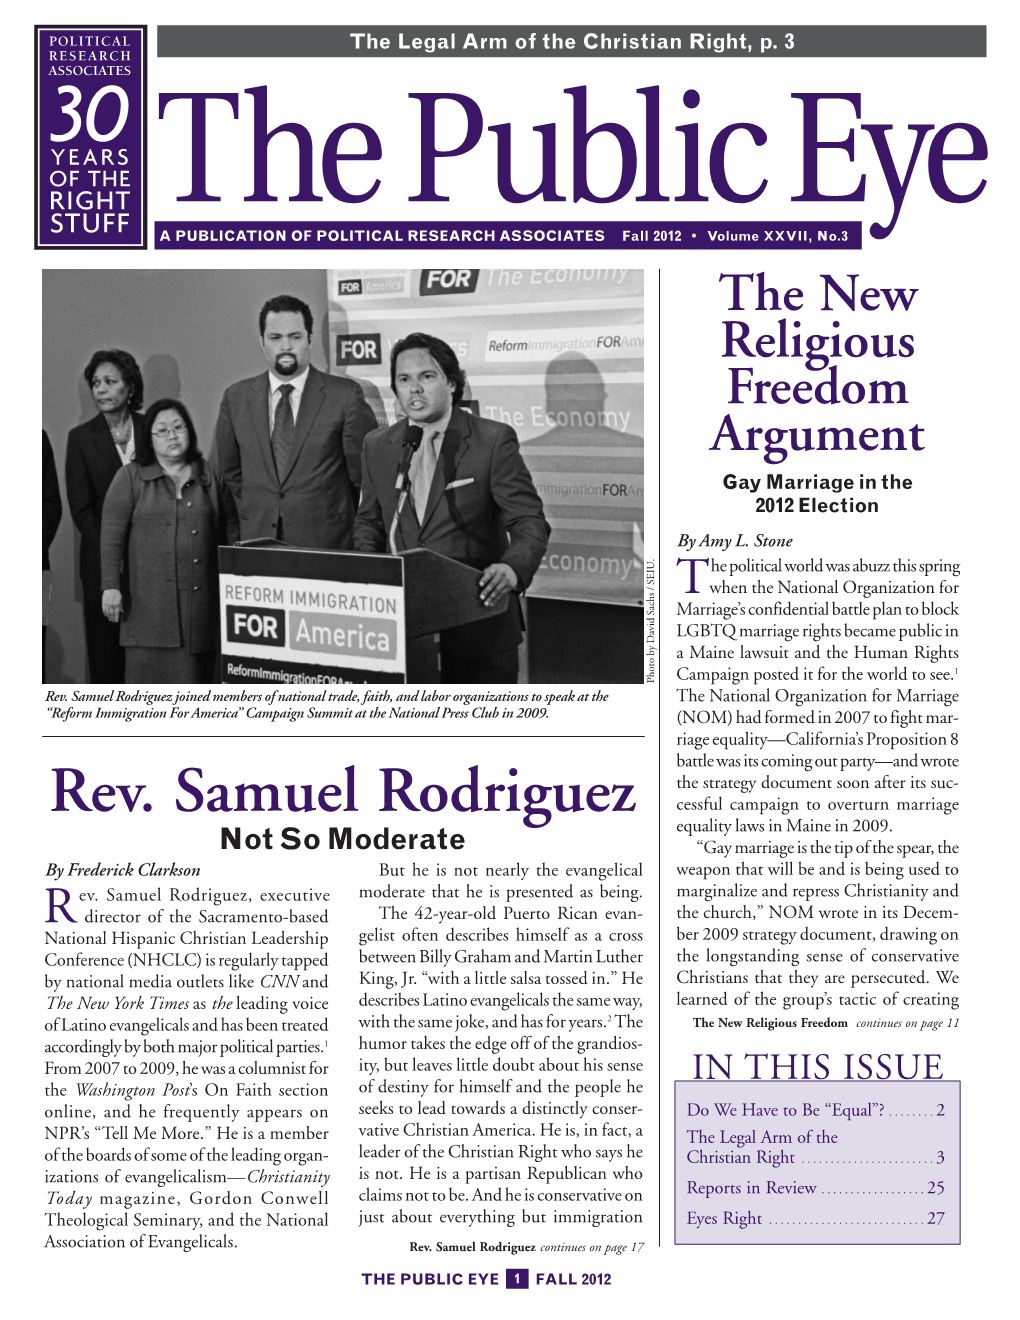 The Public Eye, Fall 2012